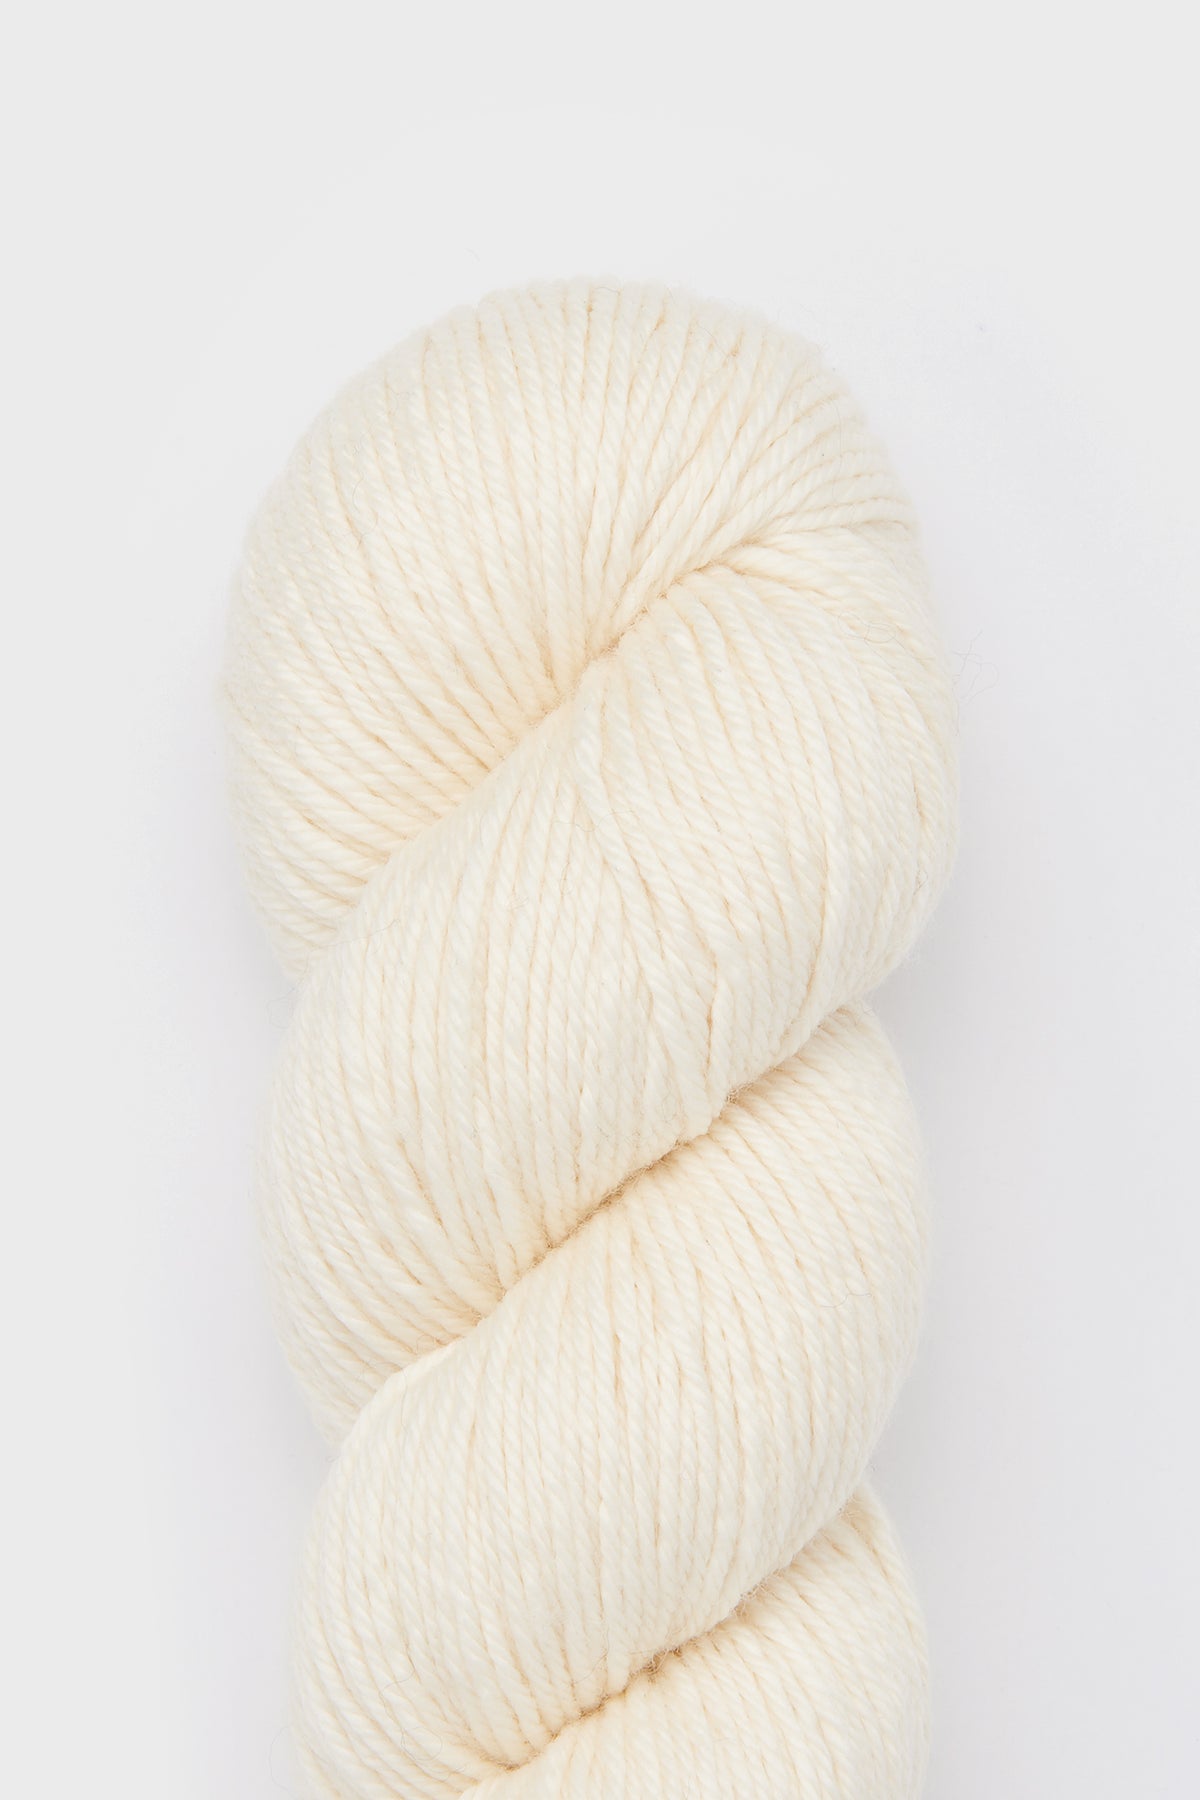 Yarn Skein - Winter Cream